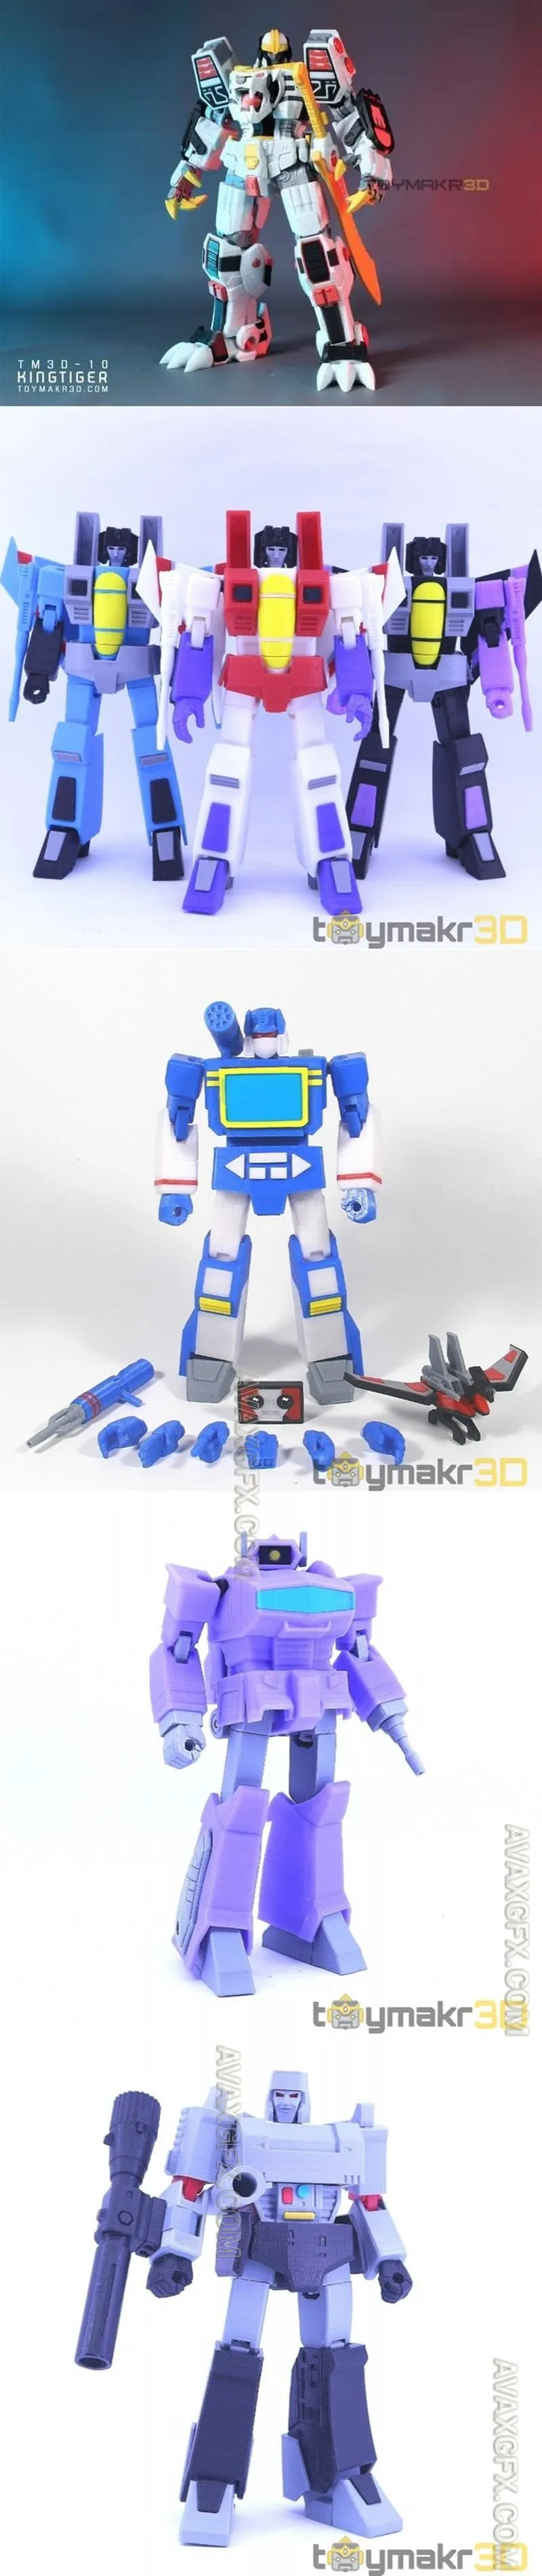 Toymakr3D - Collection - STL 3D Model